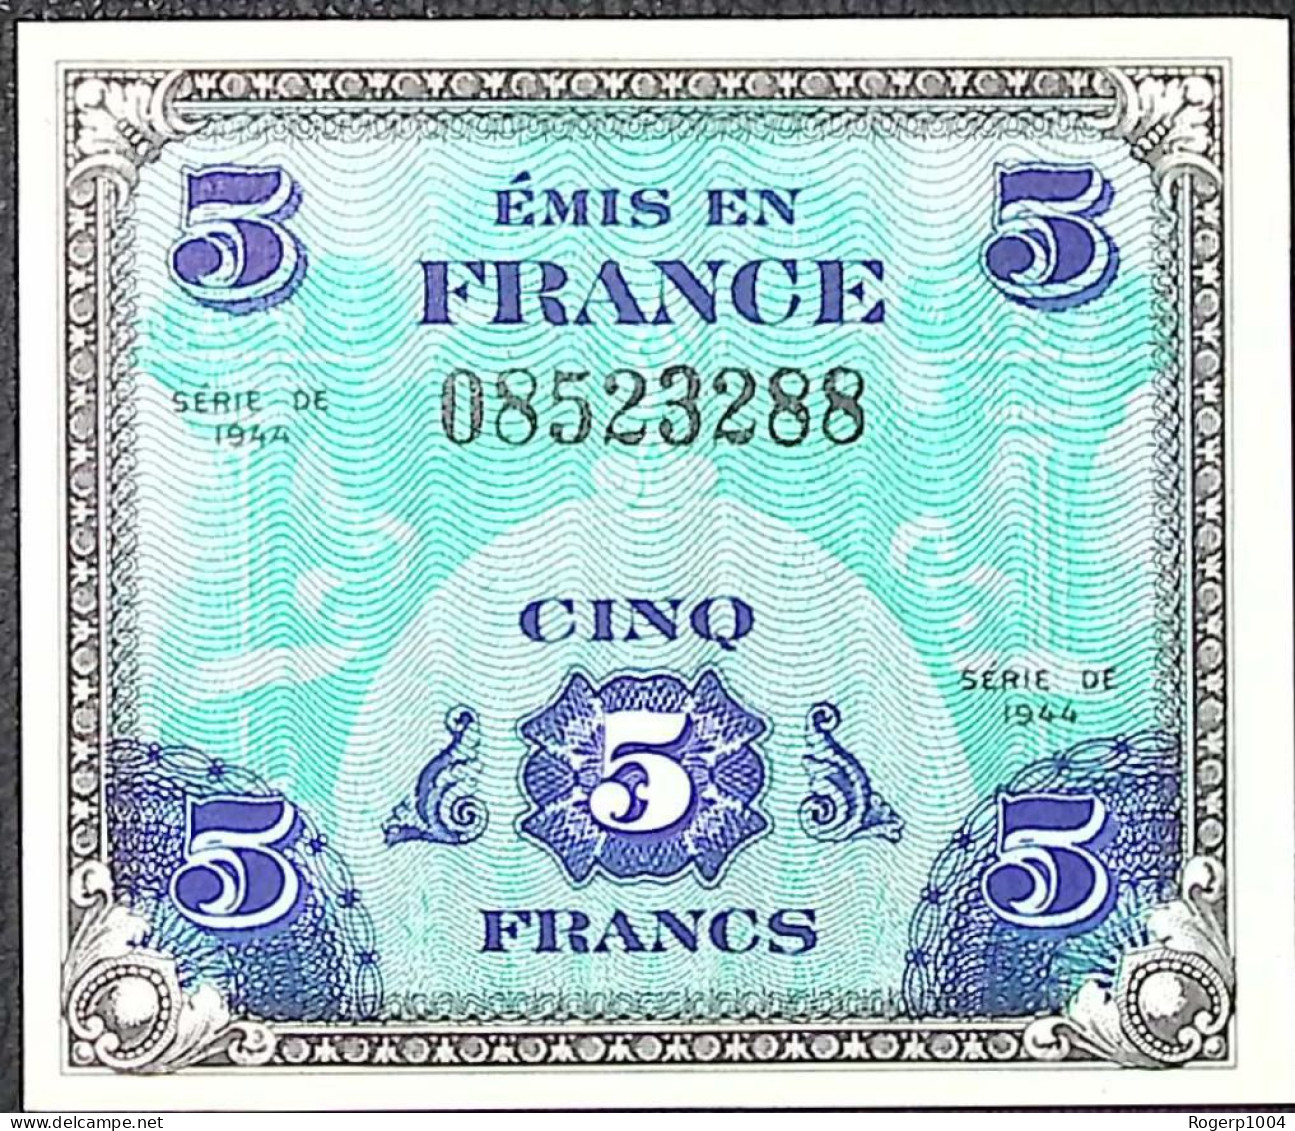 FRANCE * Billets Du Trésor * 5 Francs Drapeau * 1944 * Sans Série * Etat/Grade NEUF/UNC - 1944 Drapeau/France